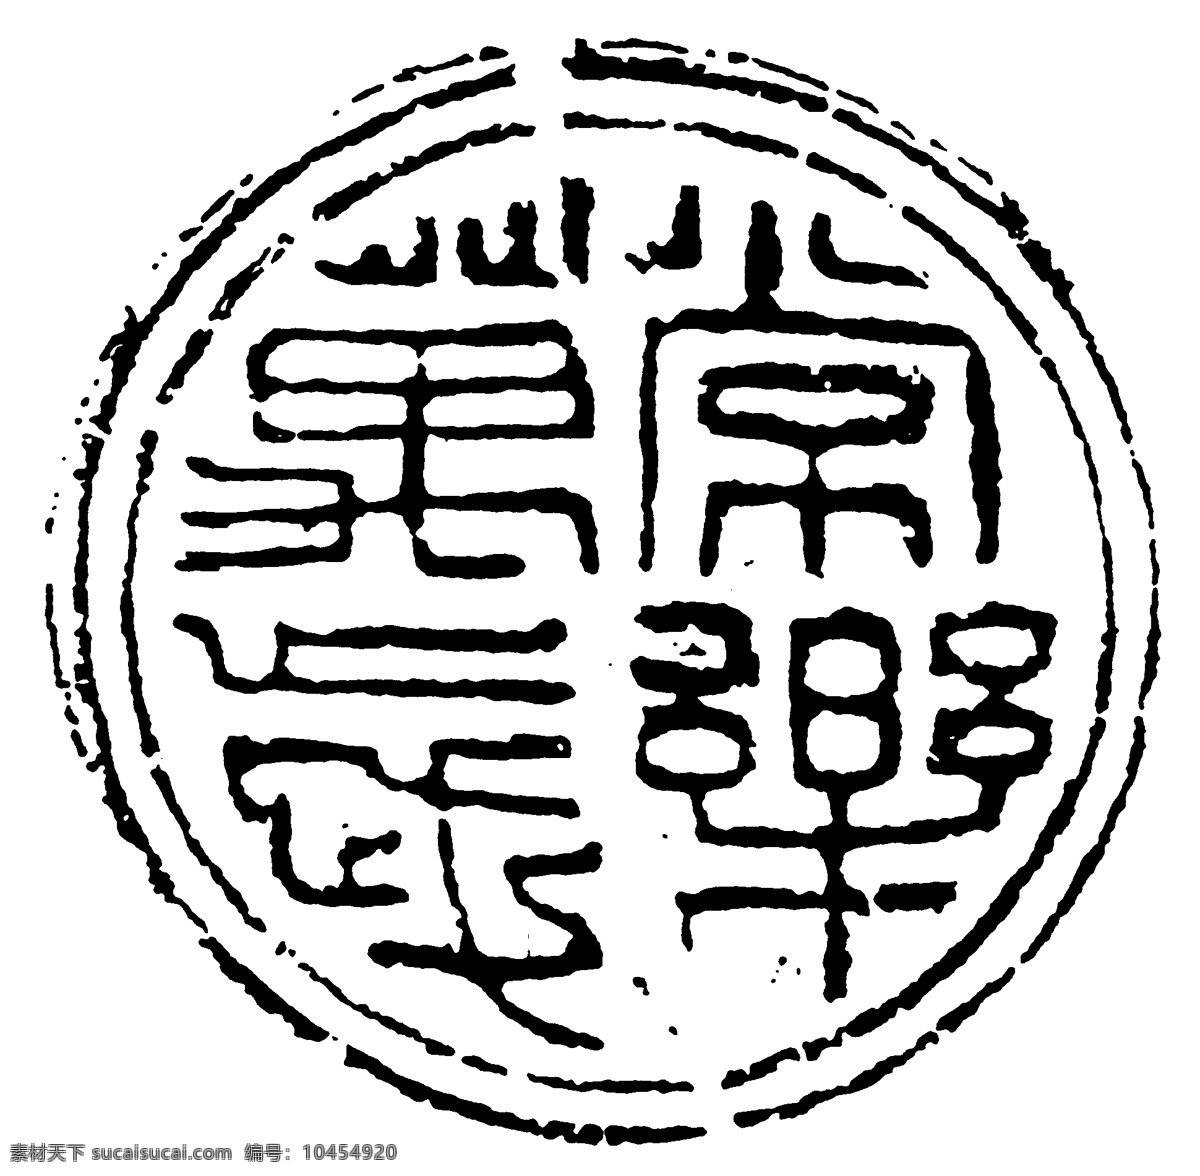 瓦当图案 秦汉时期图案 中国传统图案 图案147 图案 设计素材 瓦当纹饰 装饰图案 书画美术 白色